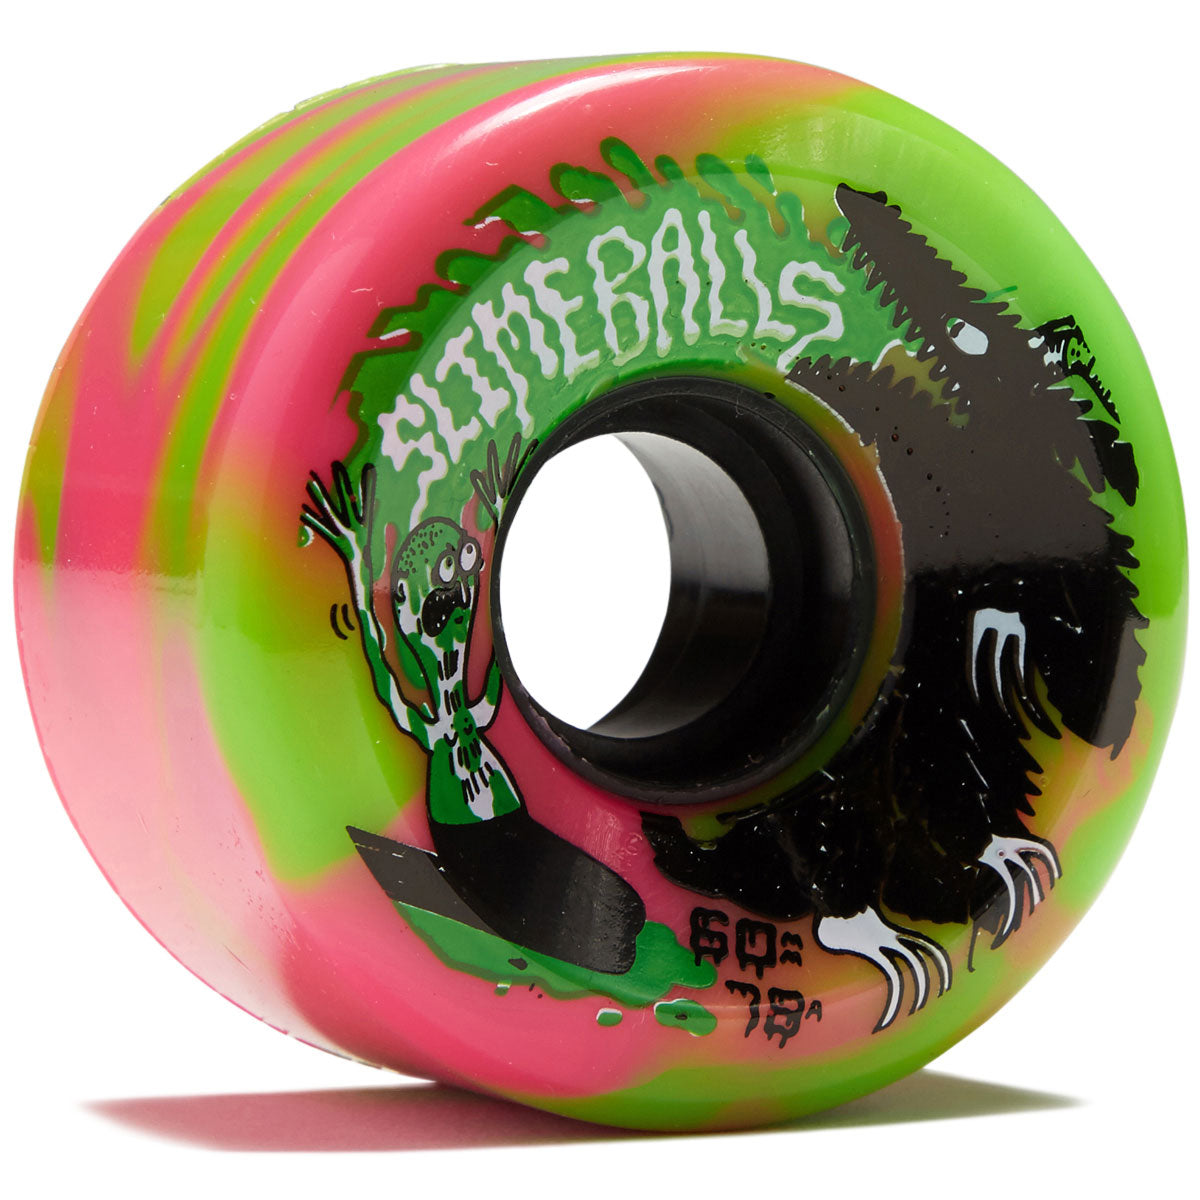 Slime Balls Jay Howell OG Slime 78a Skateboard Wheels - Pink/Green Swirl - 60mm image 1